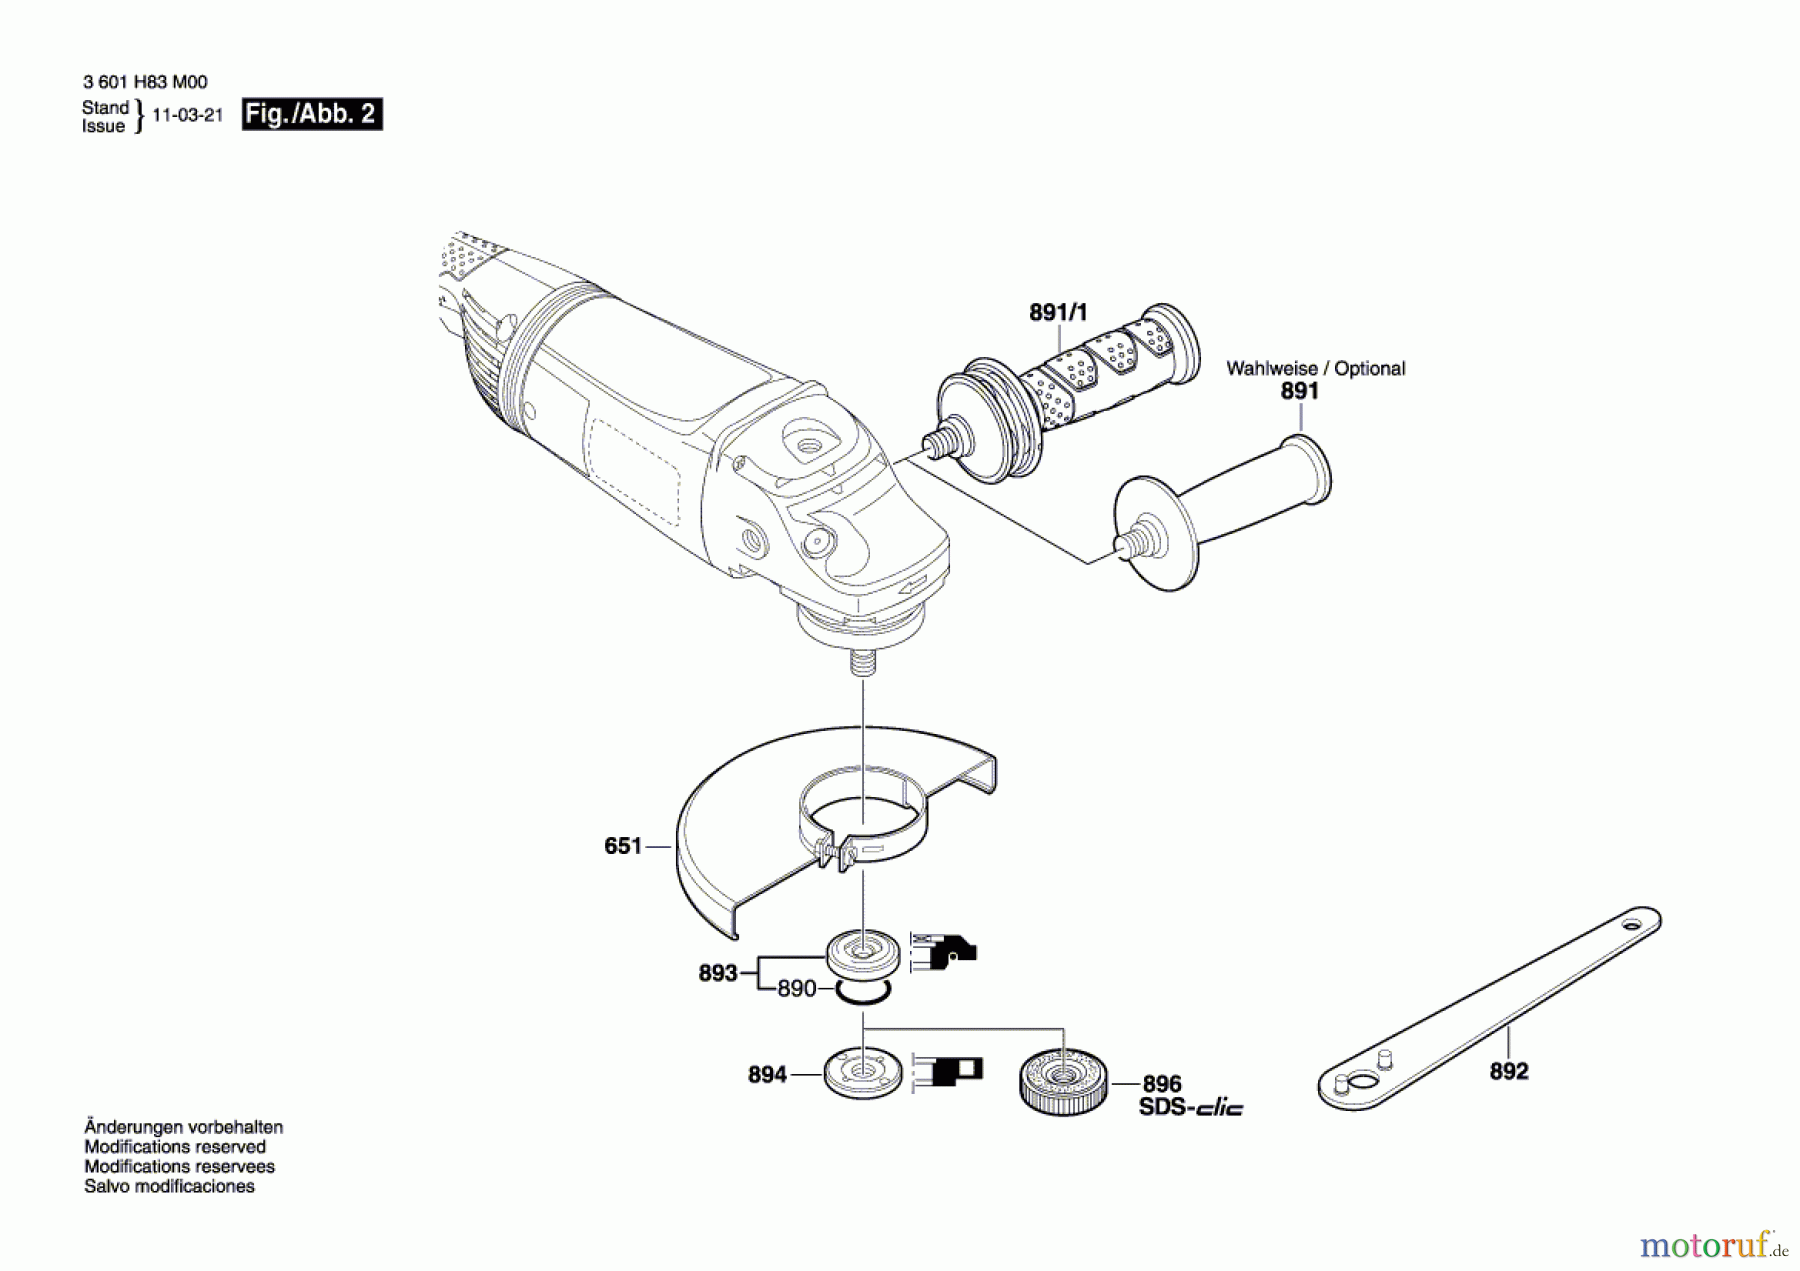  Bosch Werkzeug Winkelschleifer GWS 24-180 JH Seite 2